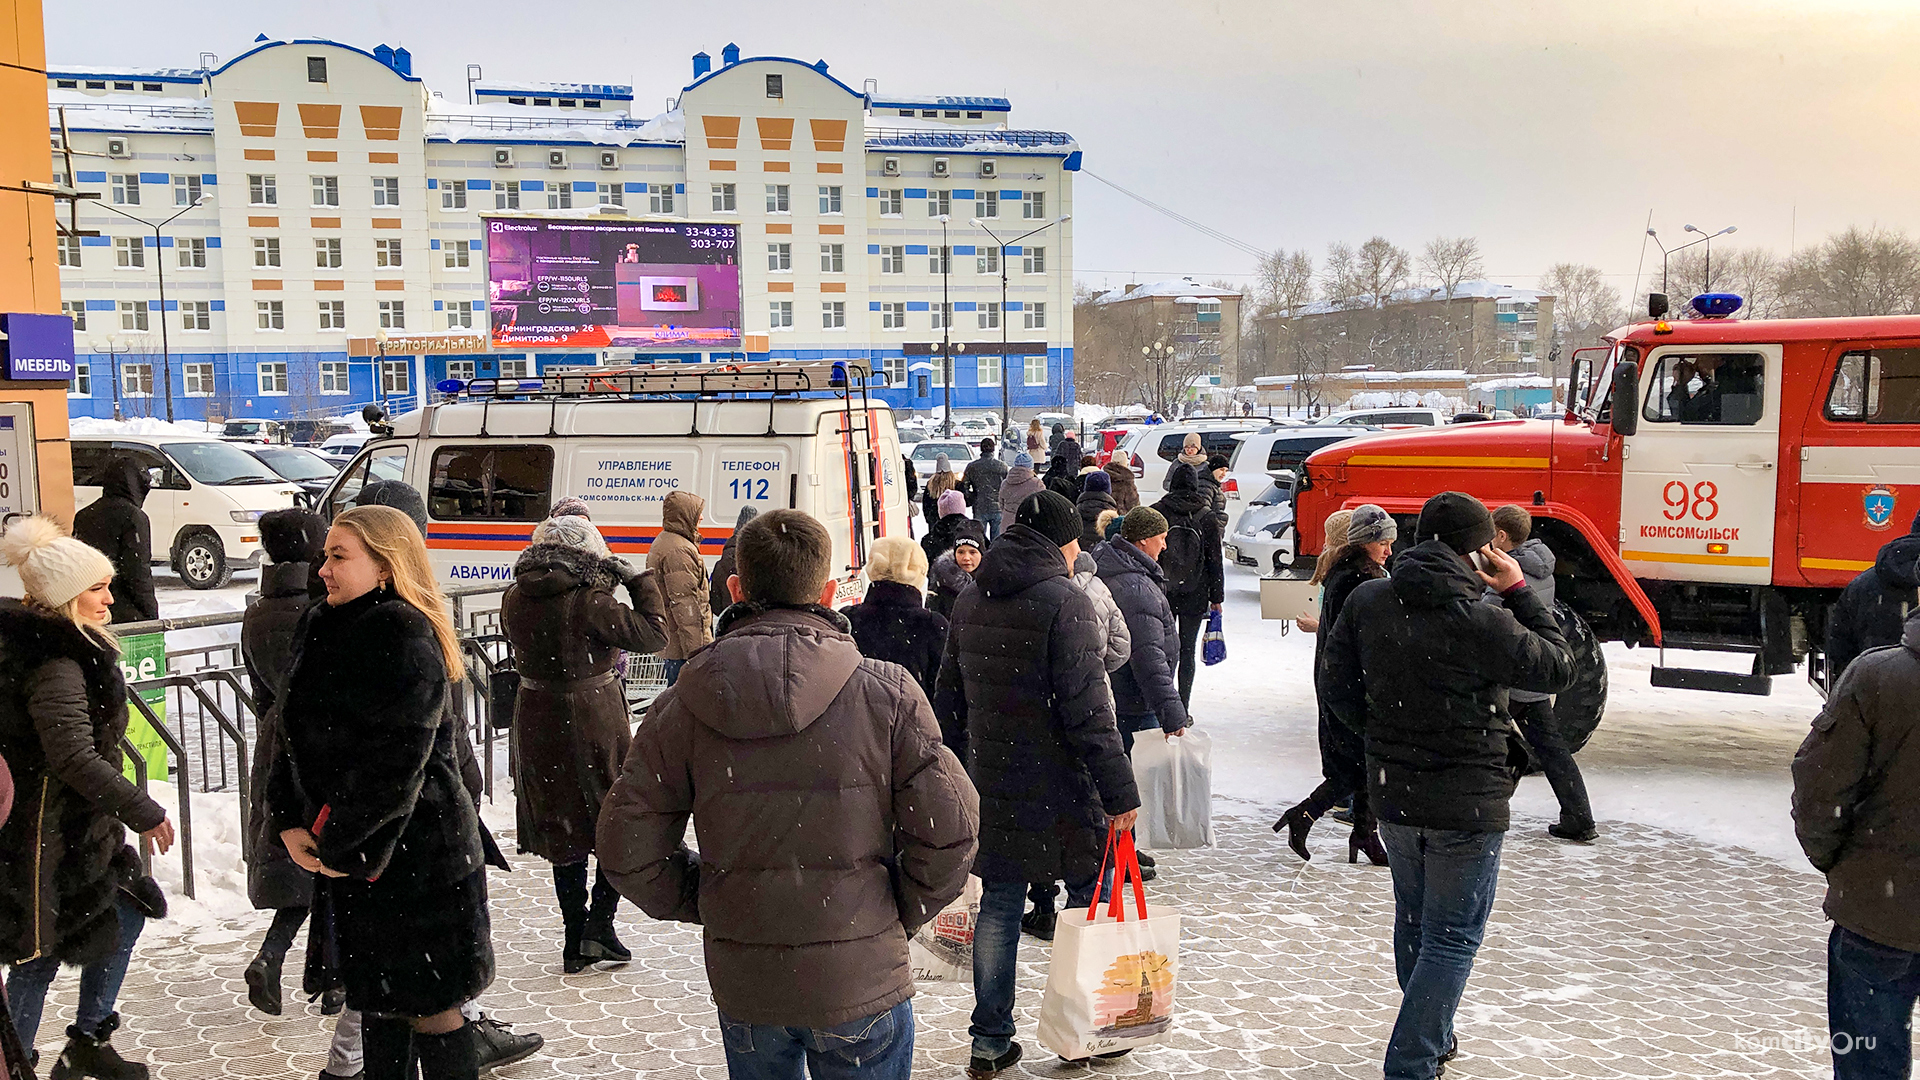 Самбери в Комсомольске-на-Амуре снова эвакуируют из-за сообщения о взрывном устройстве